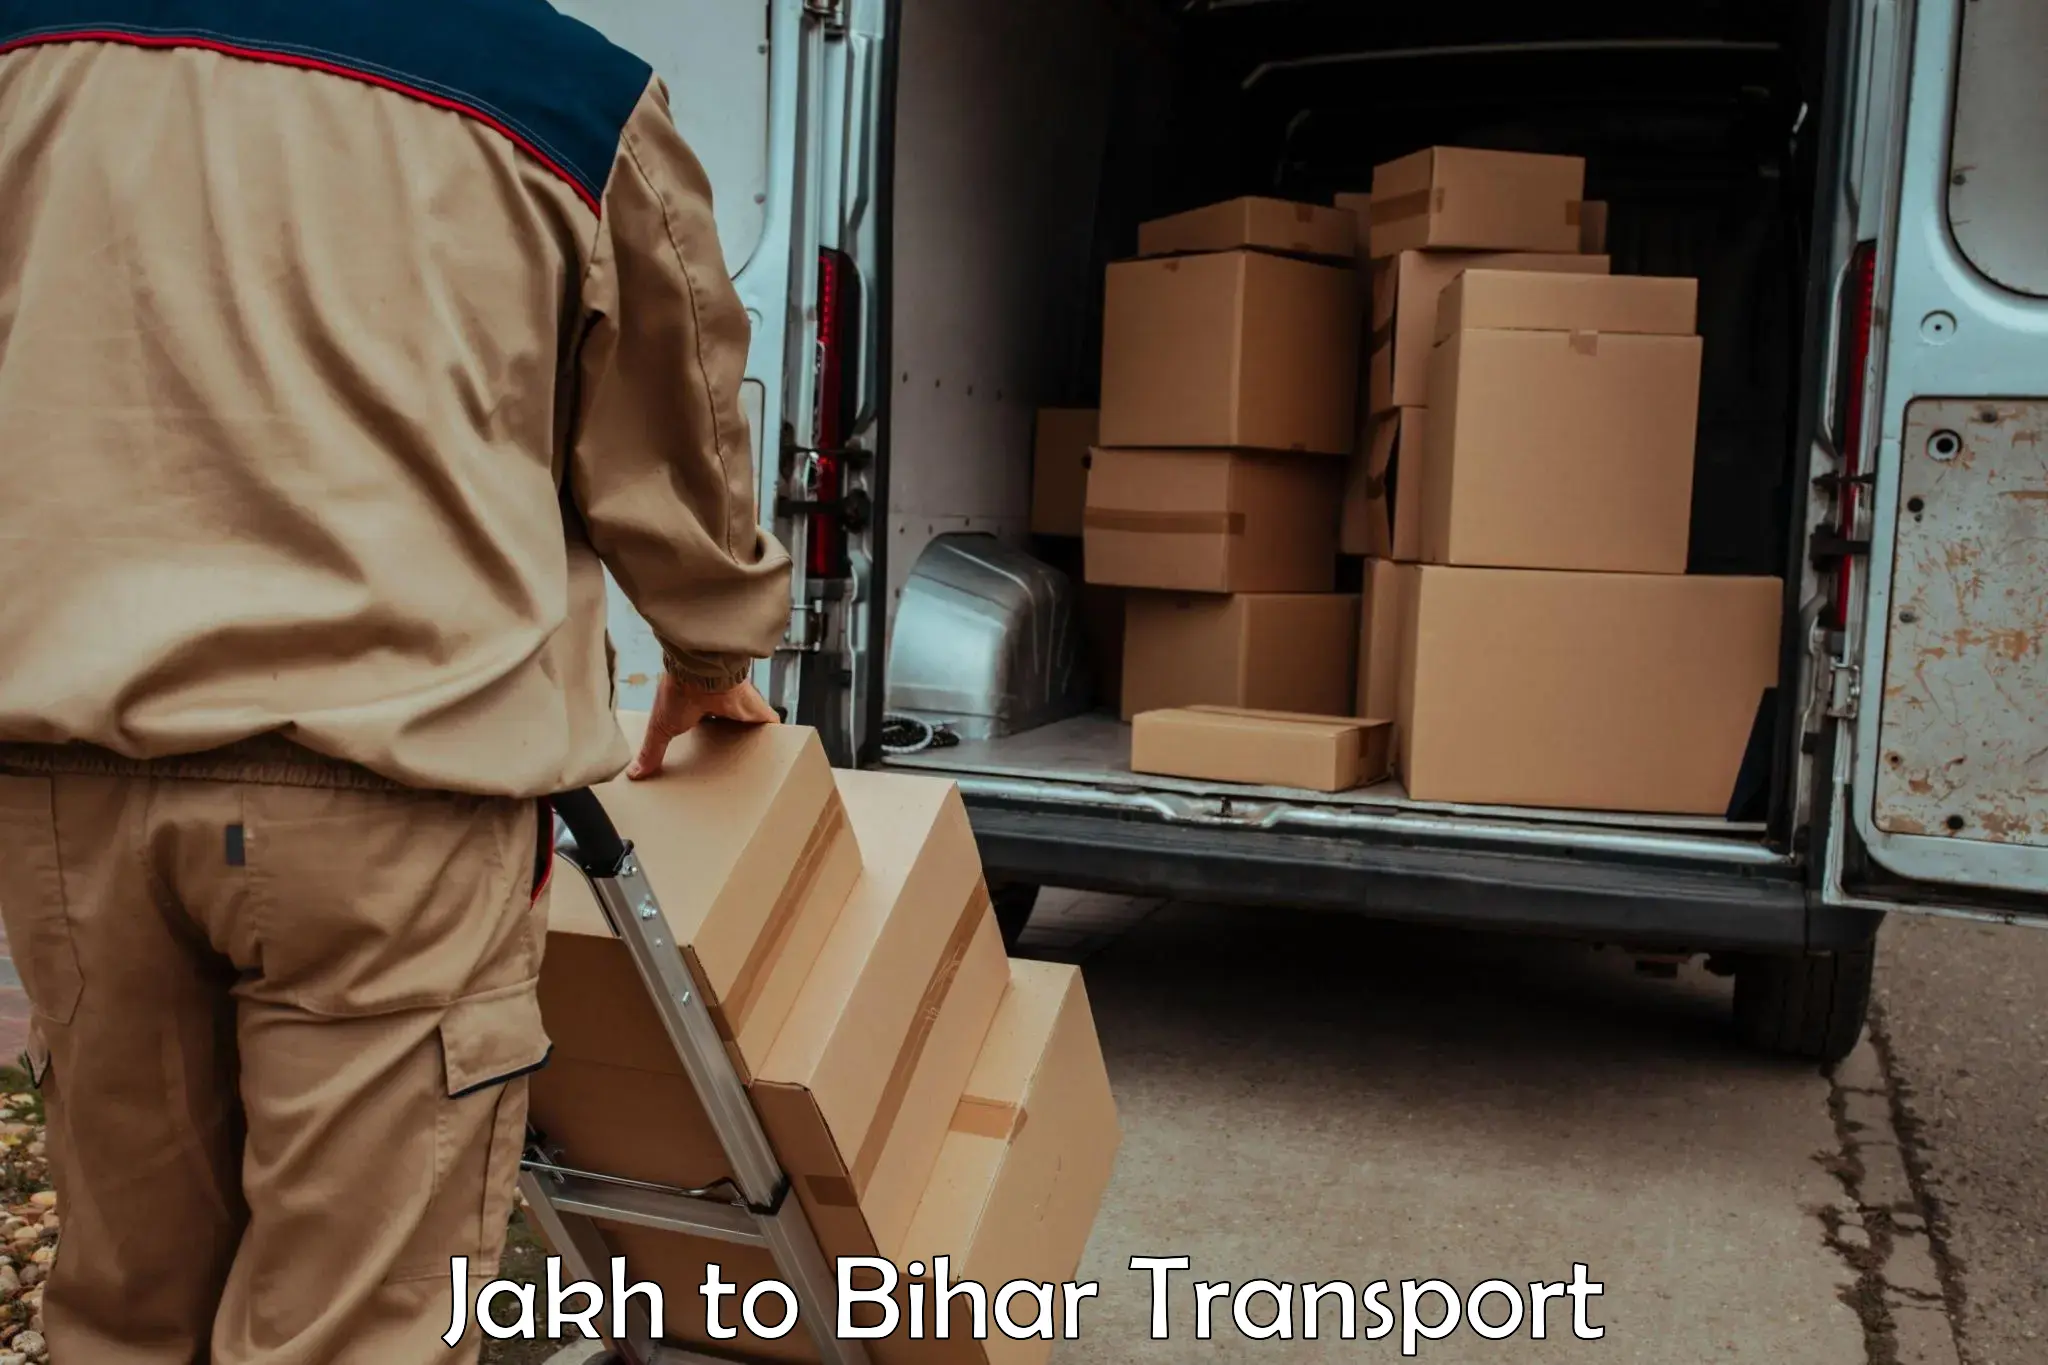 Commercial transport service Jakh to Muzaffarpur